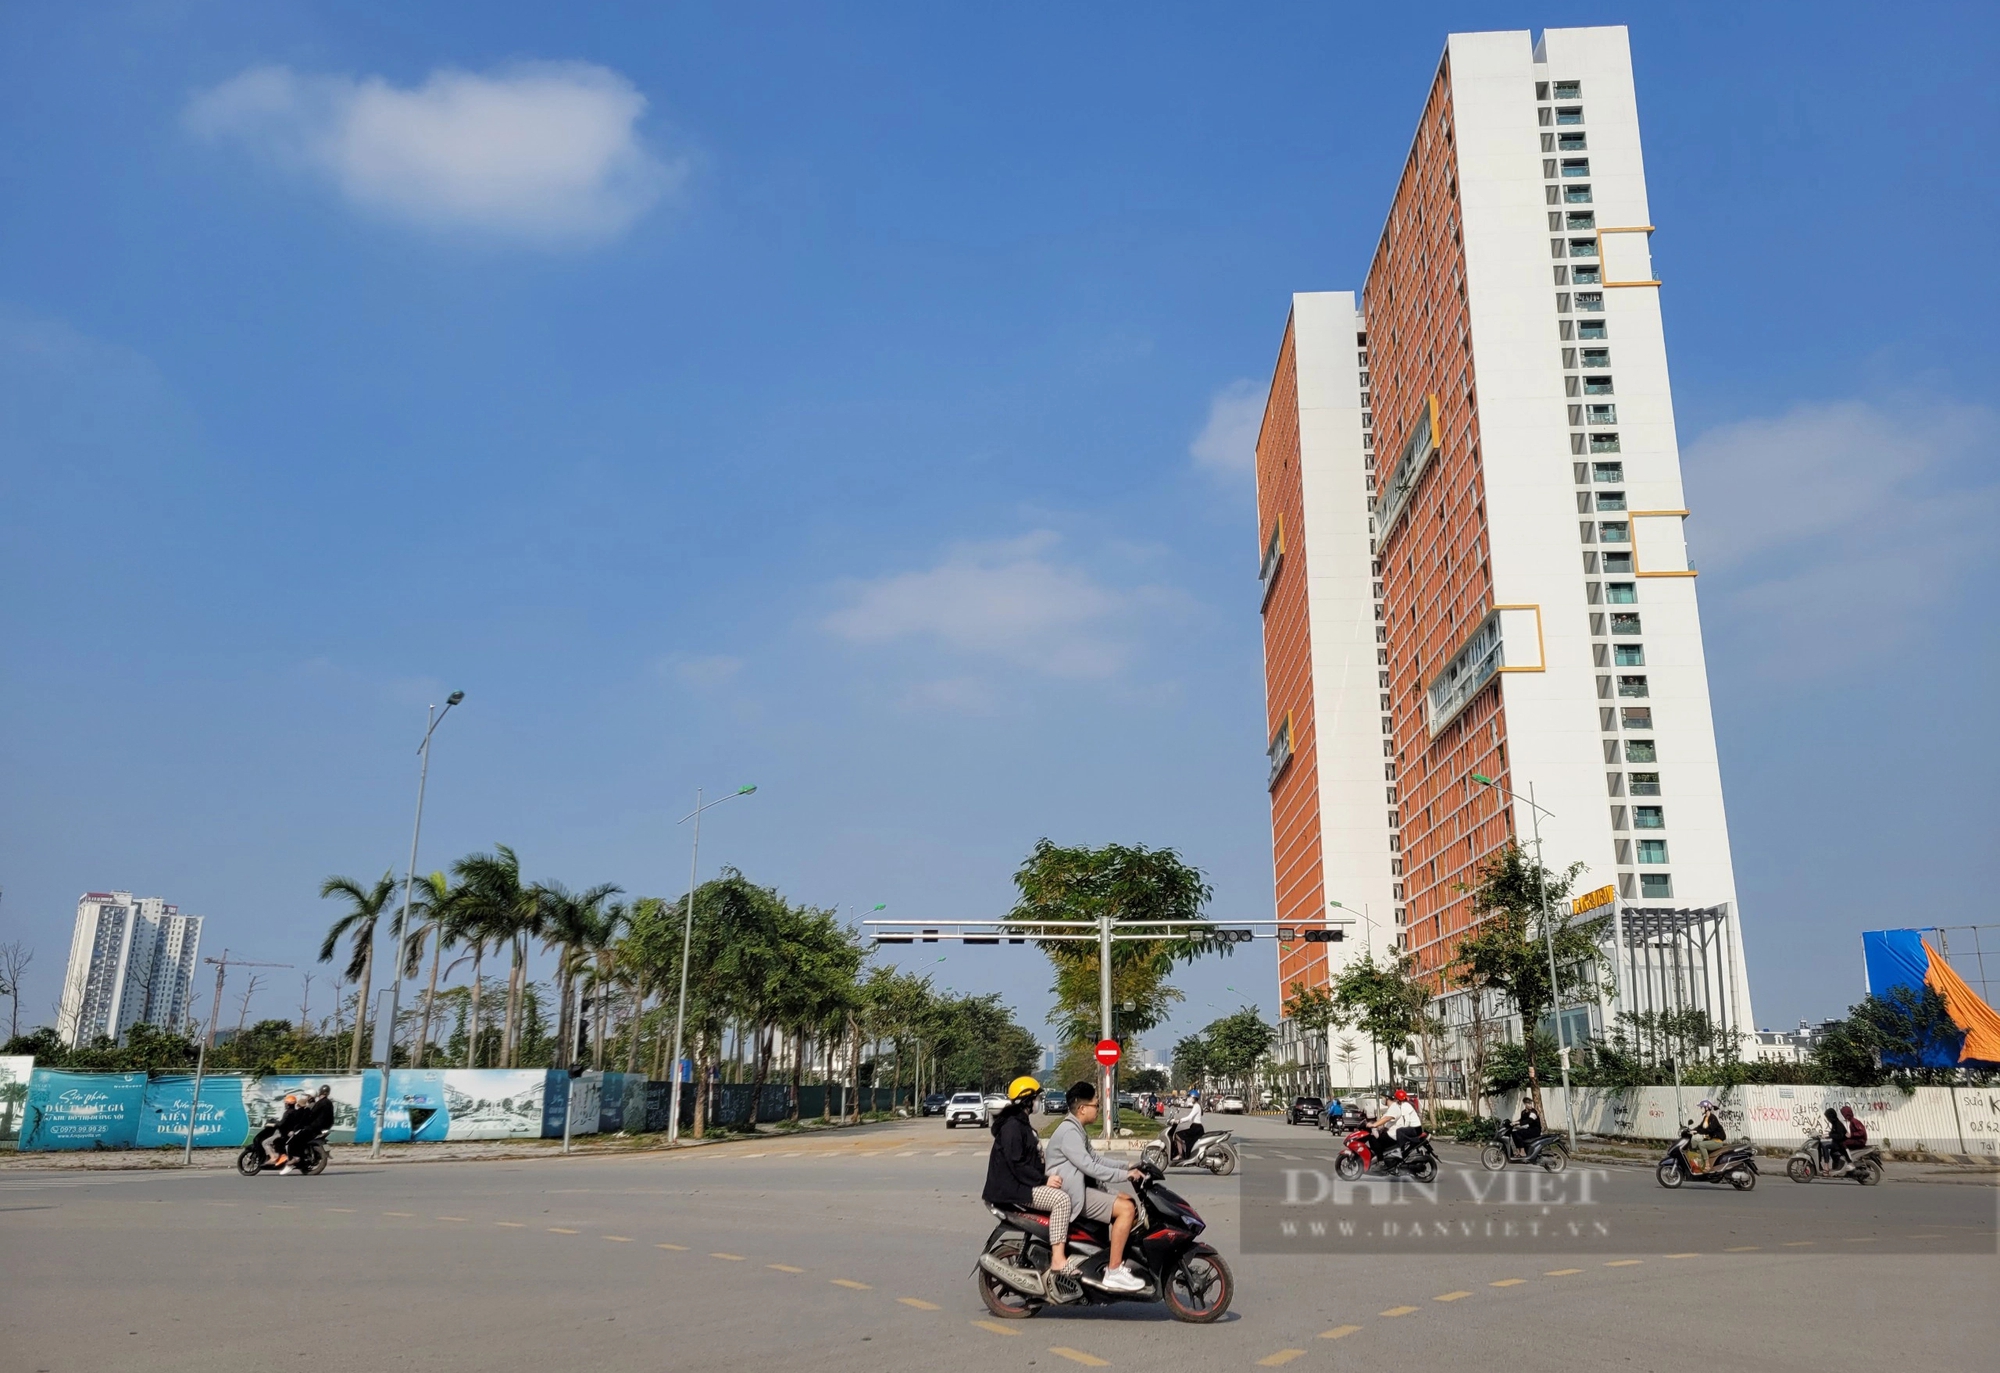 Hình hài dự án đường Lê Quang Đạo kéo dài sắp được thông xe- Ảnh 4.